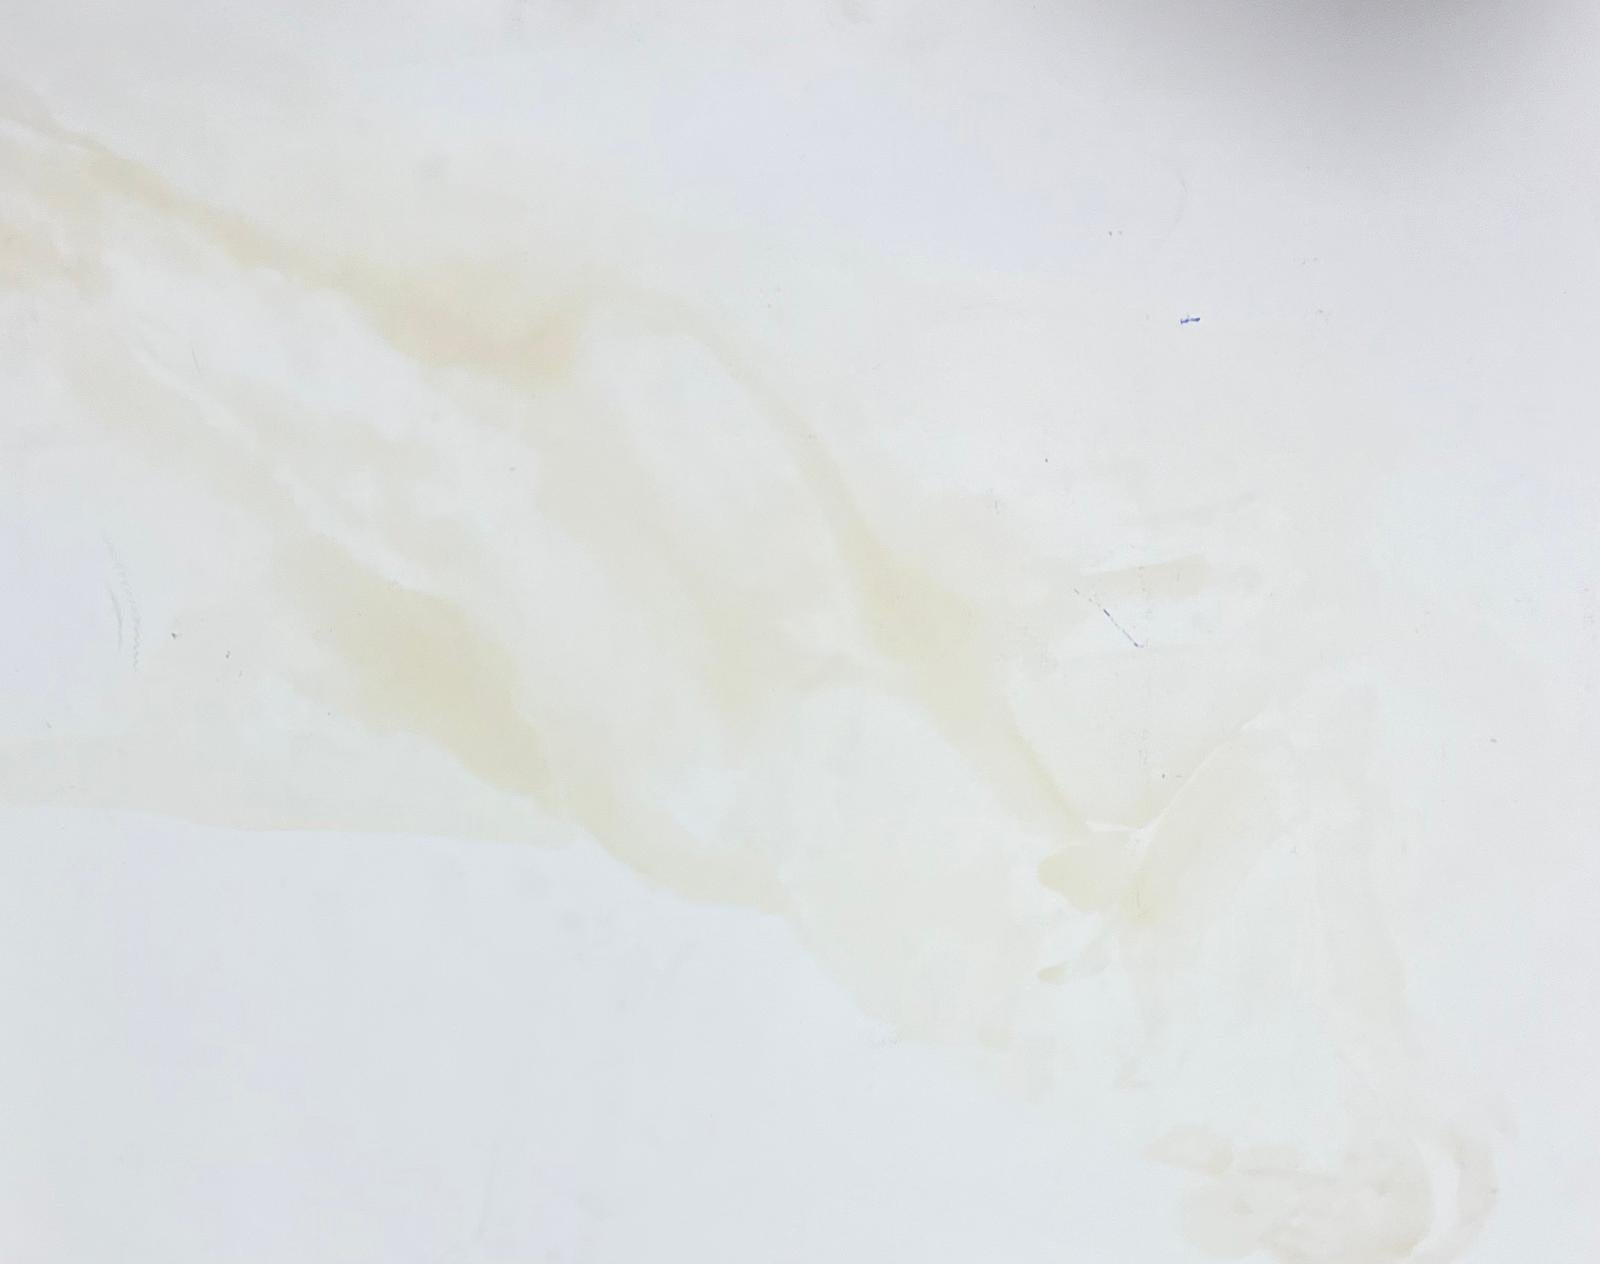 Le modèle Artistics
Femme nue modèle
École française, vers 1970 
peinture à l'huile sur carton, non encadrée
taille : 18 x 23 pouces
état : globalement très bon, quelques légères marques à la surface mais rien de préjudiciable à l'attrait et à